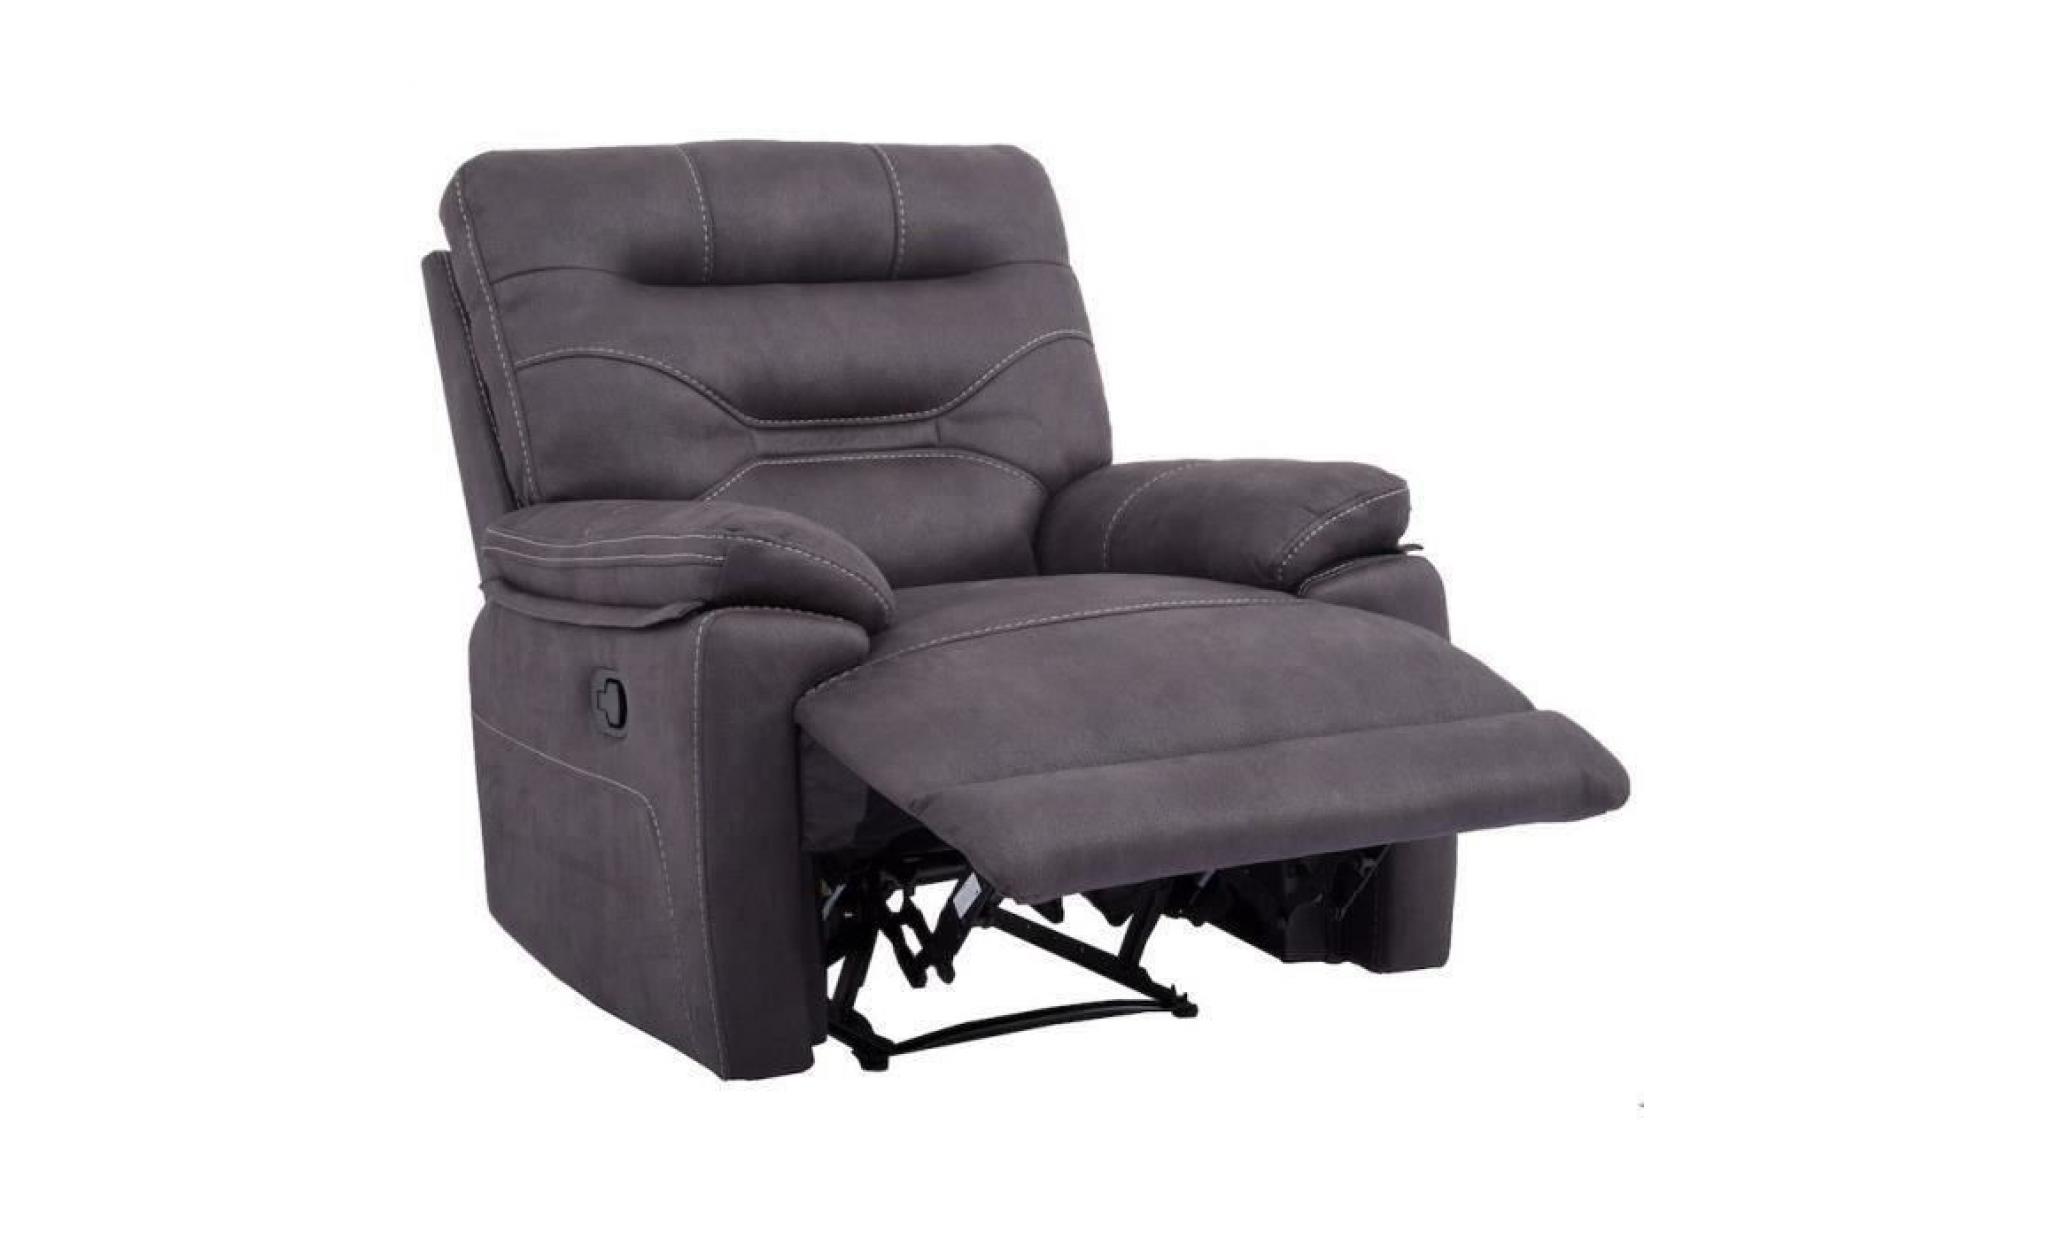 joshua fauteuil de relaxation   tissu gris   contemporain   l 89 x p 95 cm pas cher